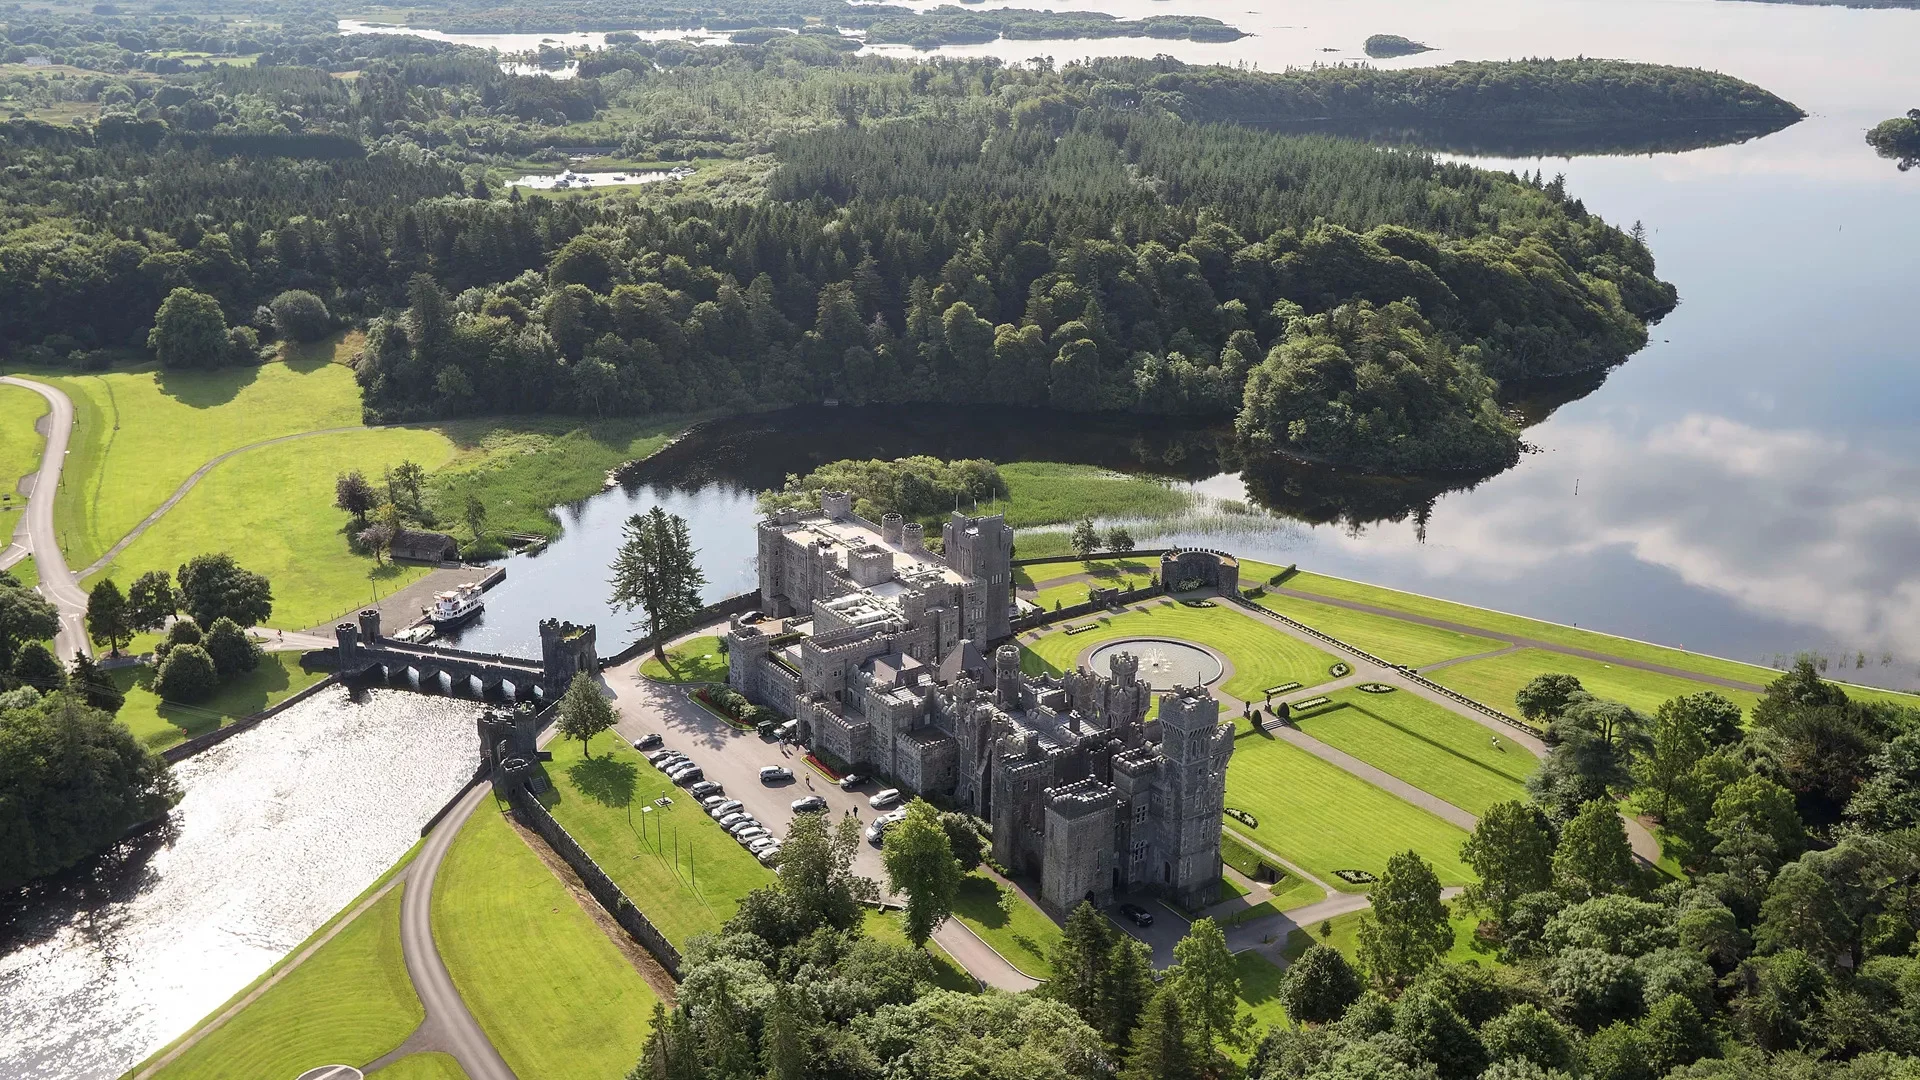 Ashford Castle - Ireland